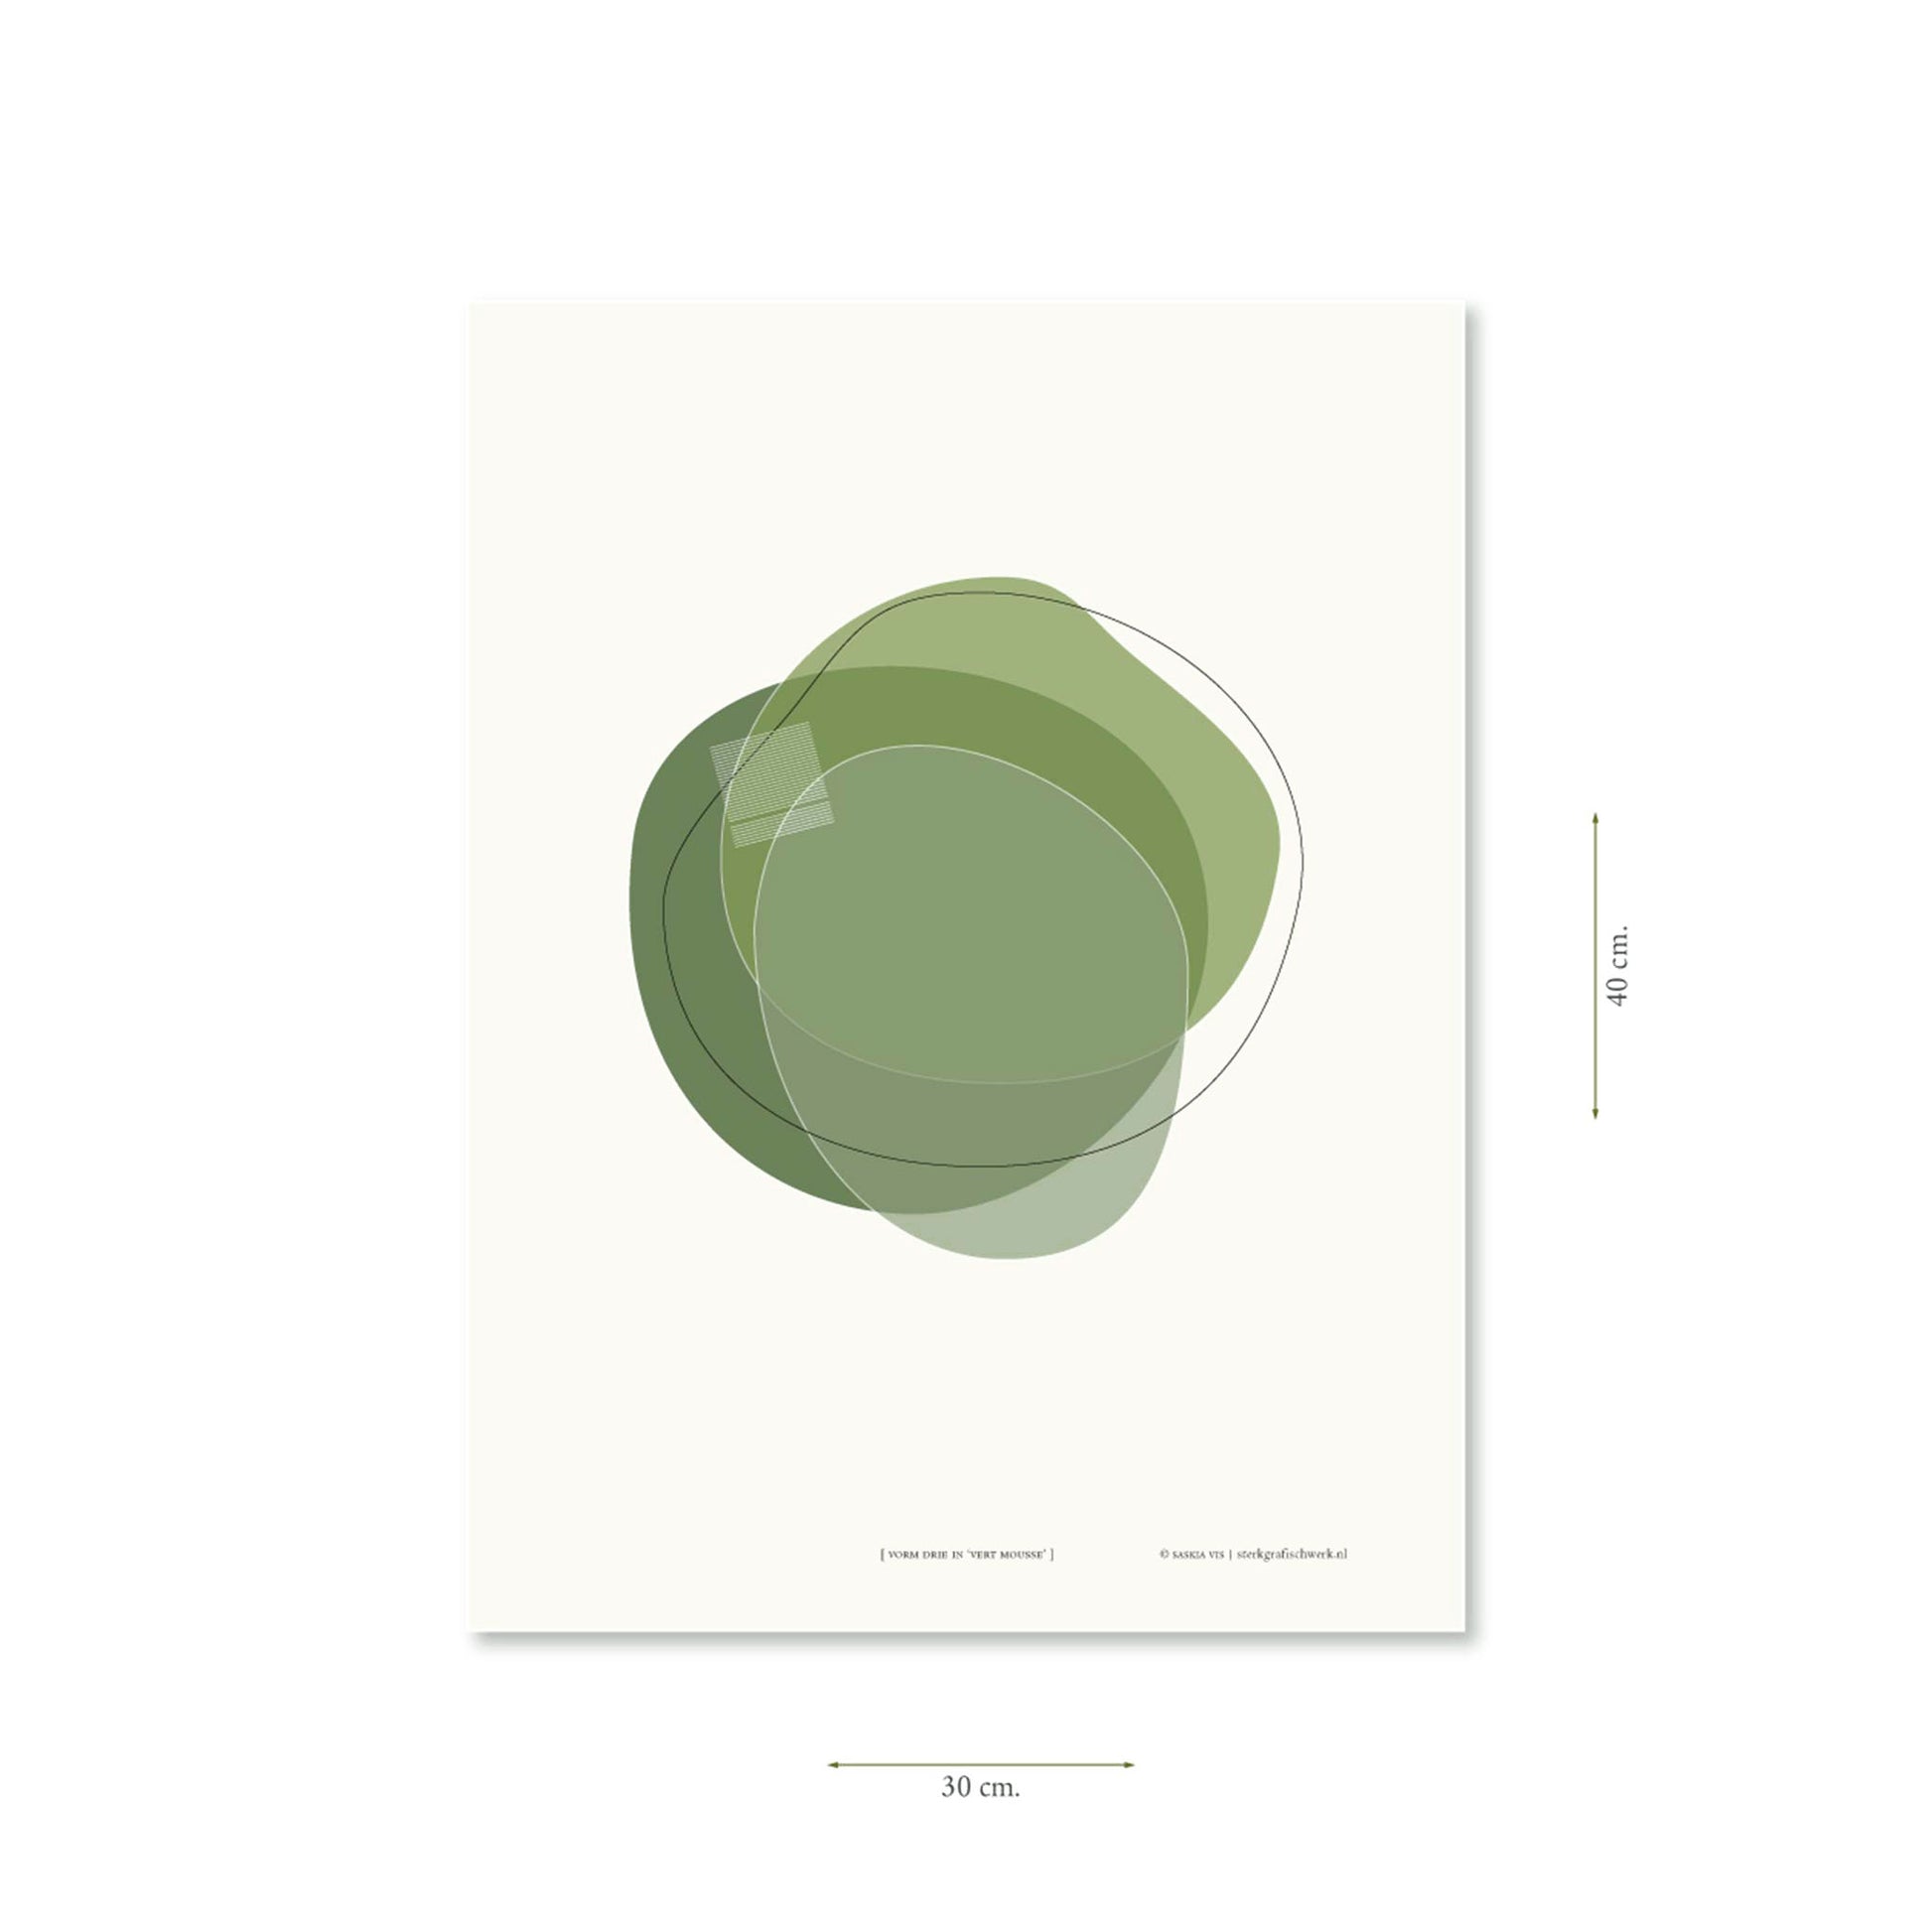 Productafbeelding, poster "vorm drie in vert mousse", met aanduiding van het formaat erop weergegeven 30 x 40 cm